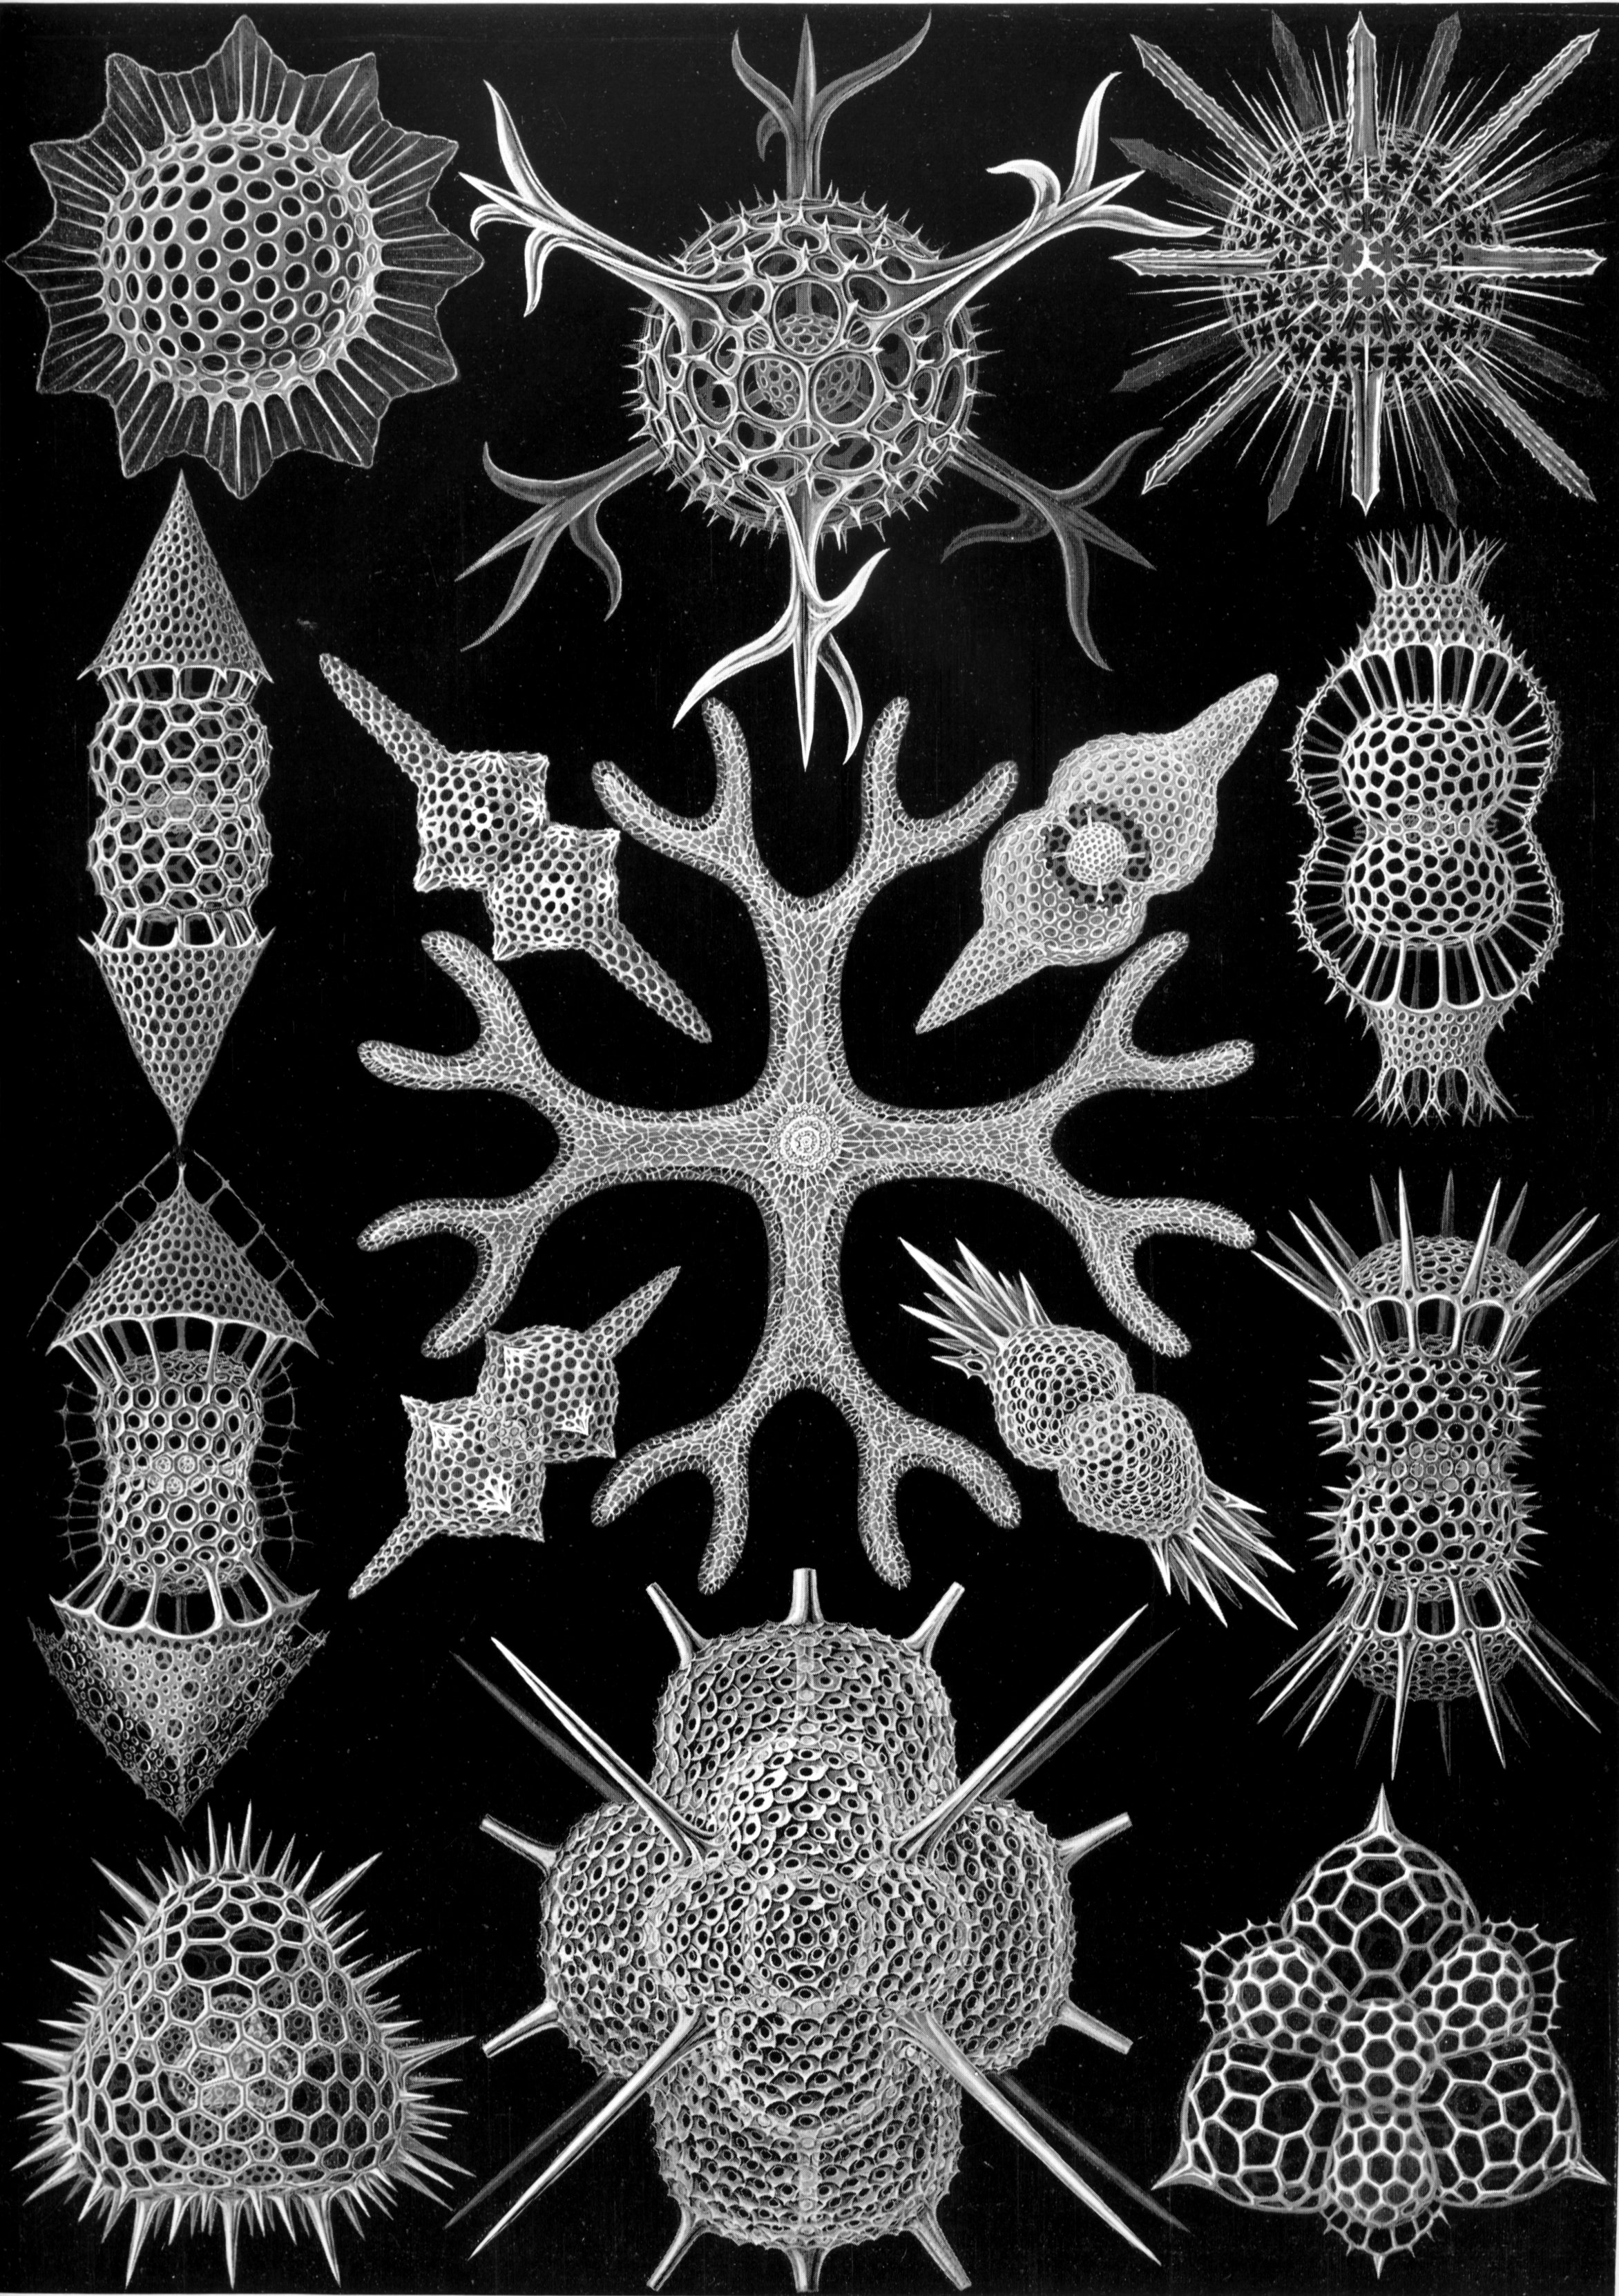 Radiolarians drawn by Haeckel